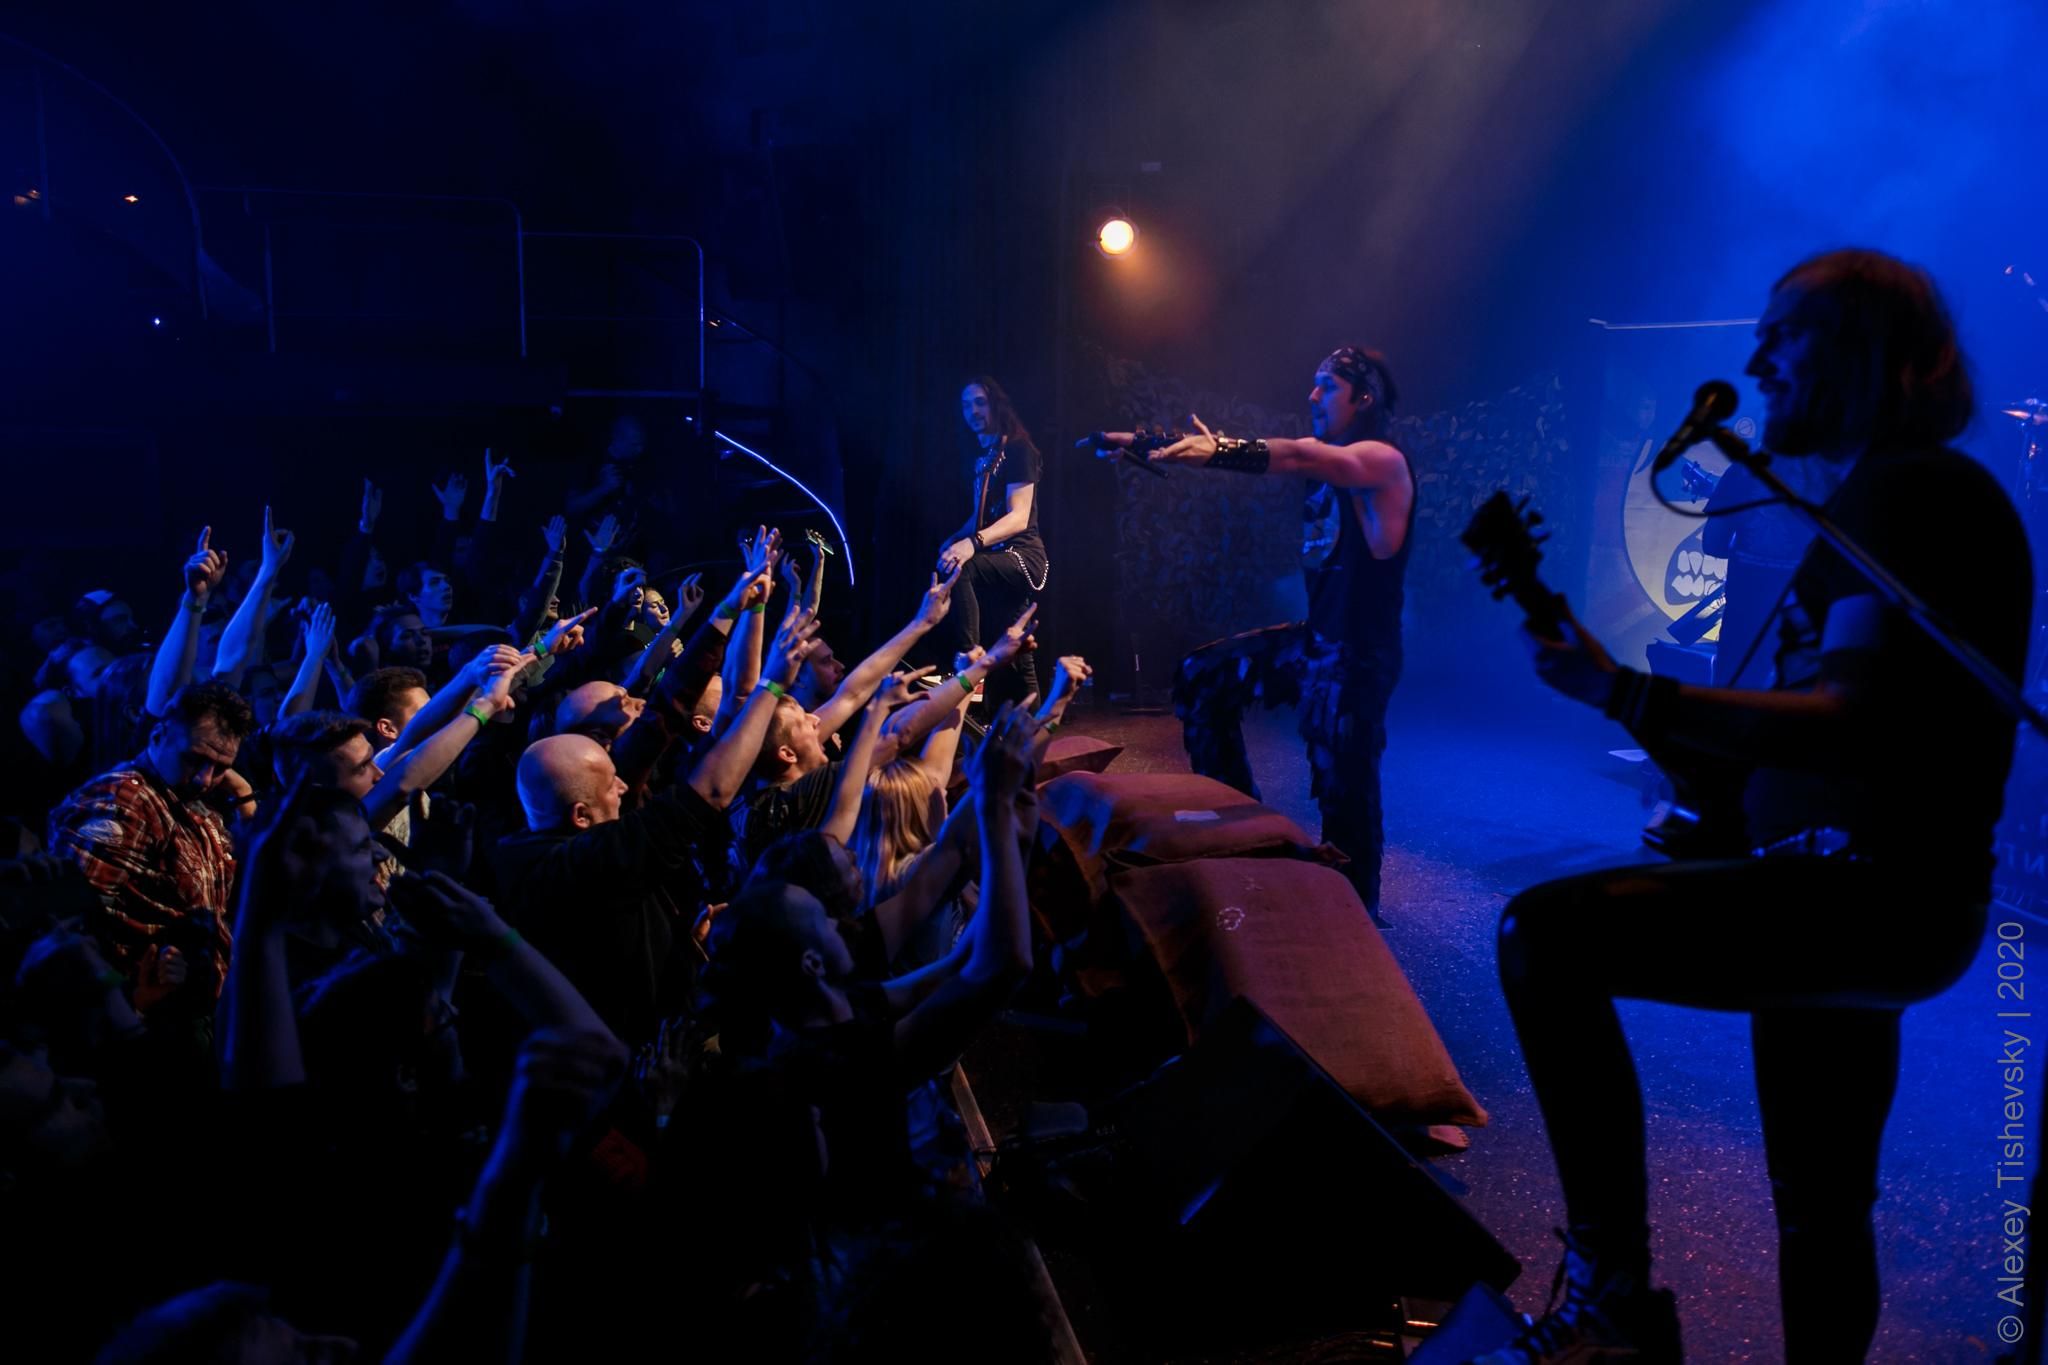 "Кровні брати" Iron Maiden зіграли потужний концерт у Києві: фото